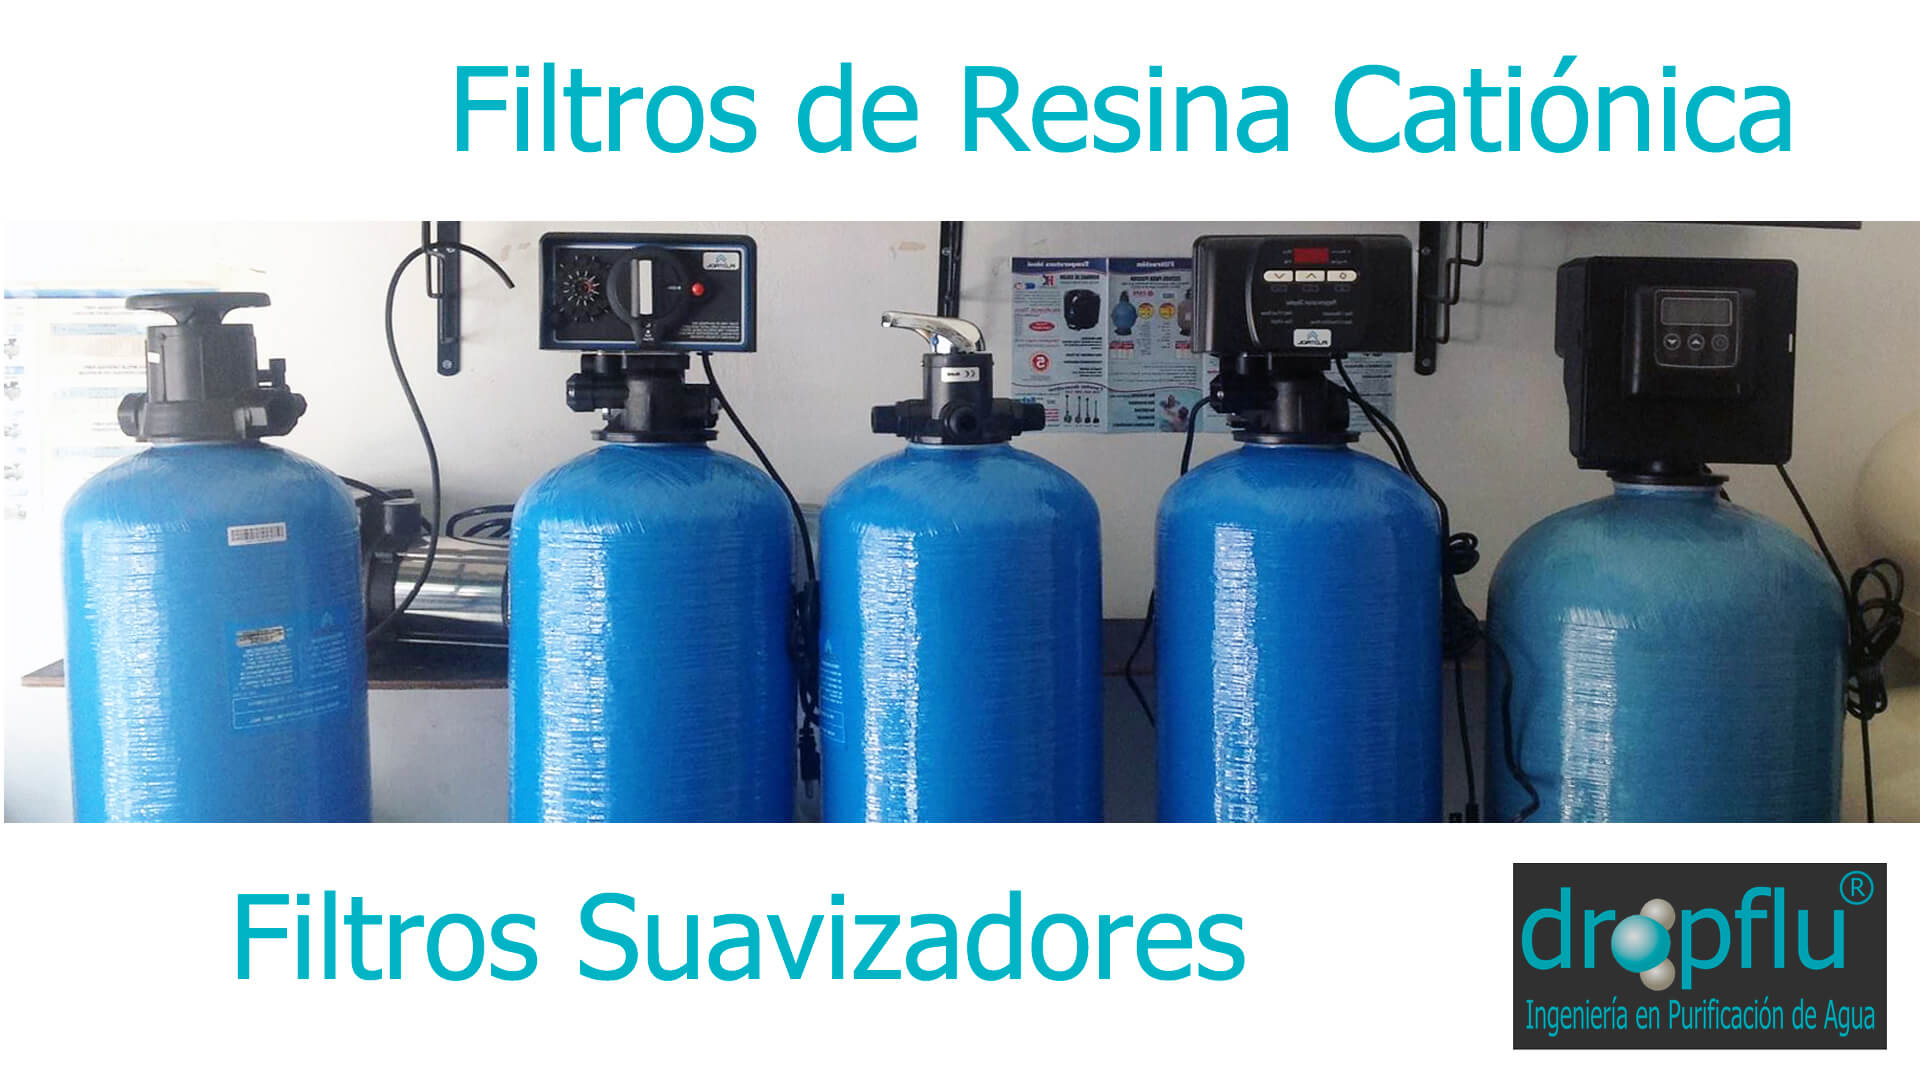 Venta Filtros Suavizadores de Agua Comprar Ablandador Descalcificador - DF  (DROPFLU)